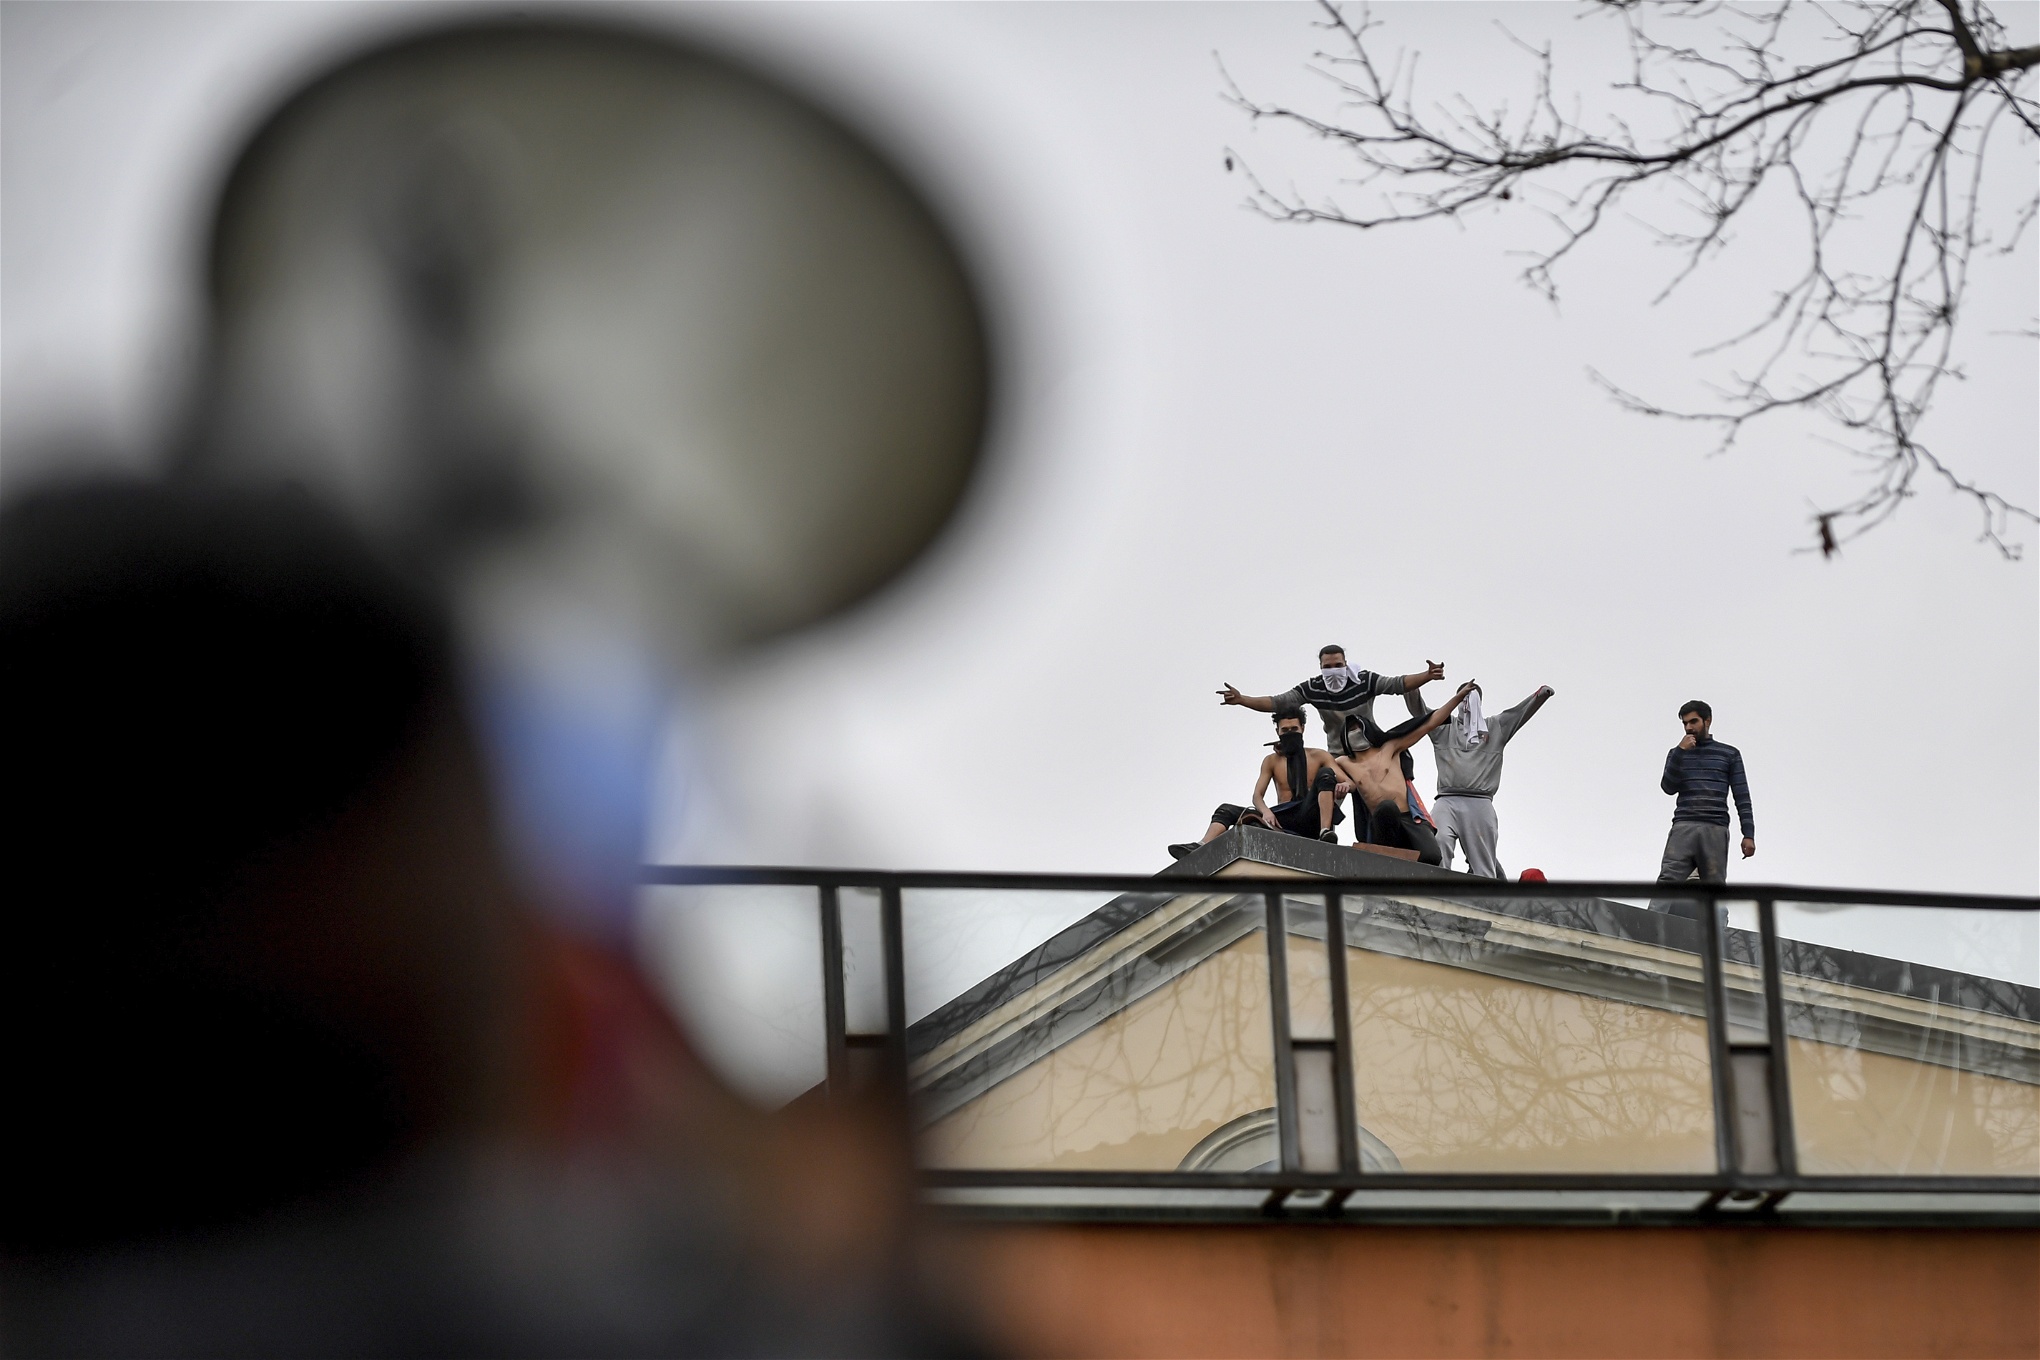 Fångar demonstrerar på taket till San Vittore-fängelset i Modena måndagen den 9 mars. Foto: Claudio Furlan/TT